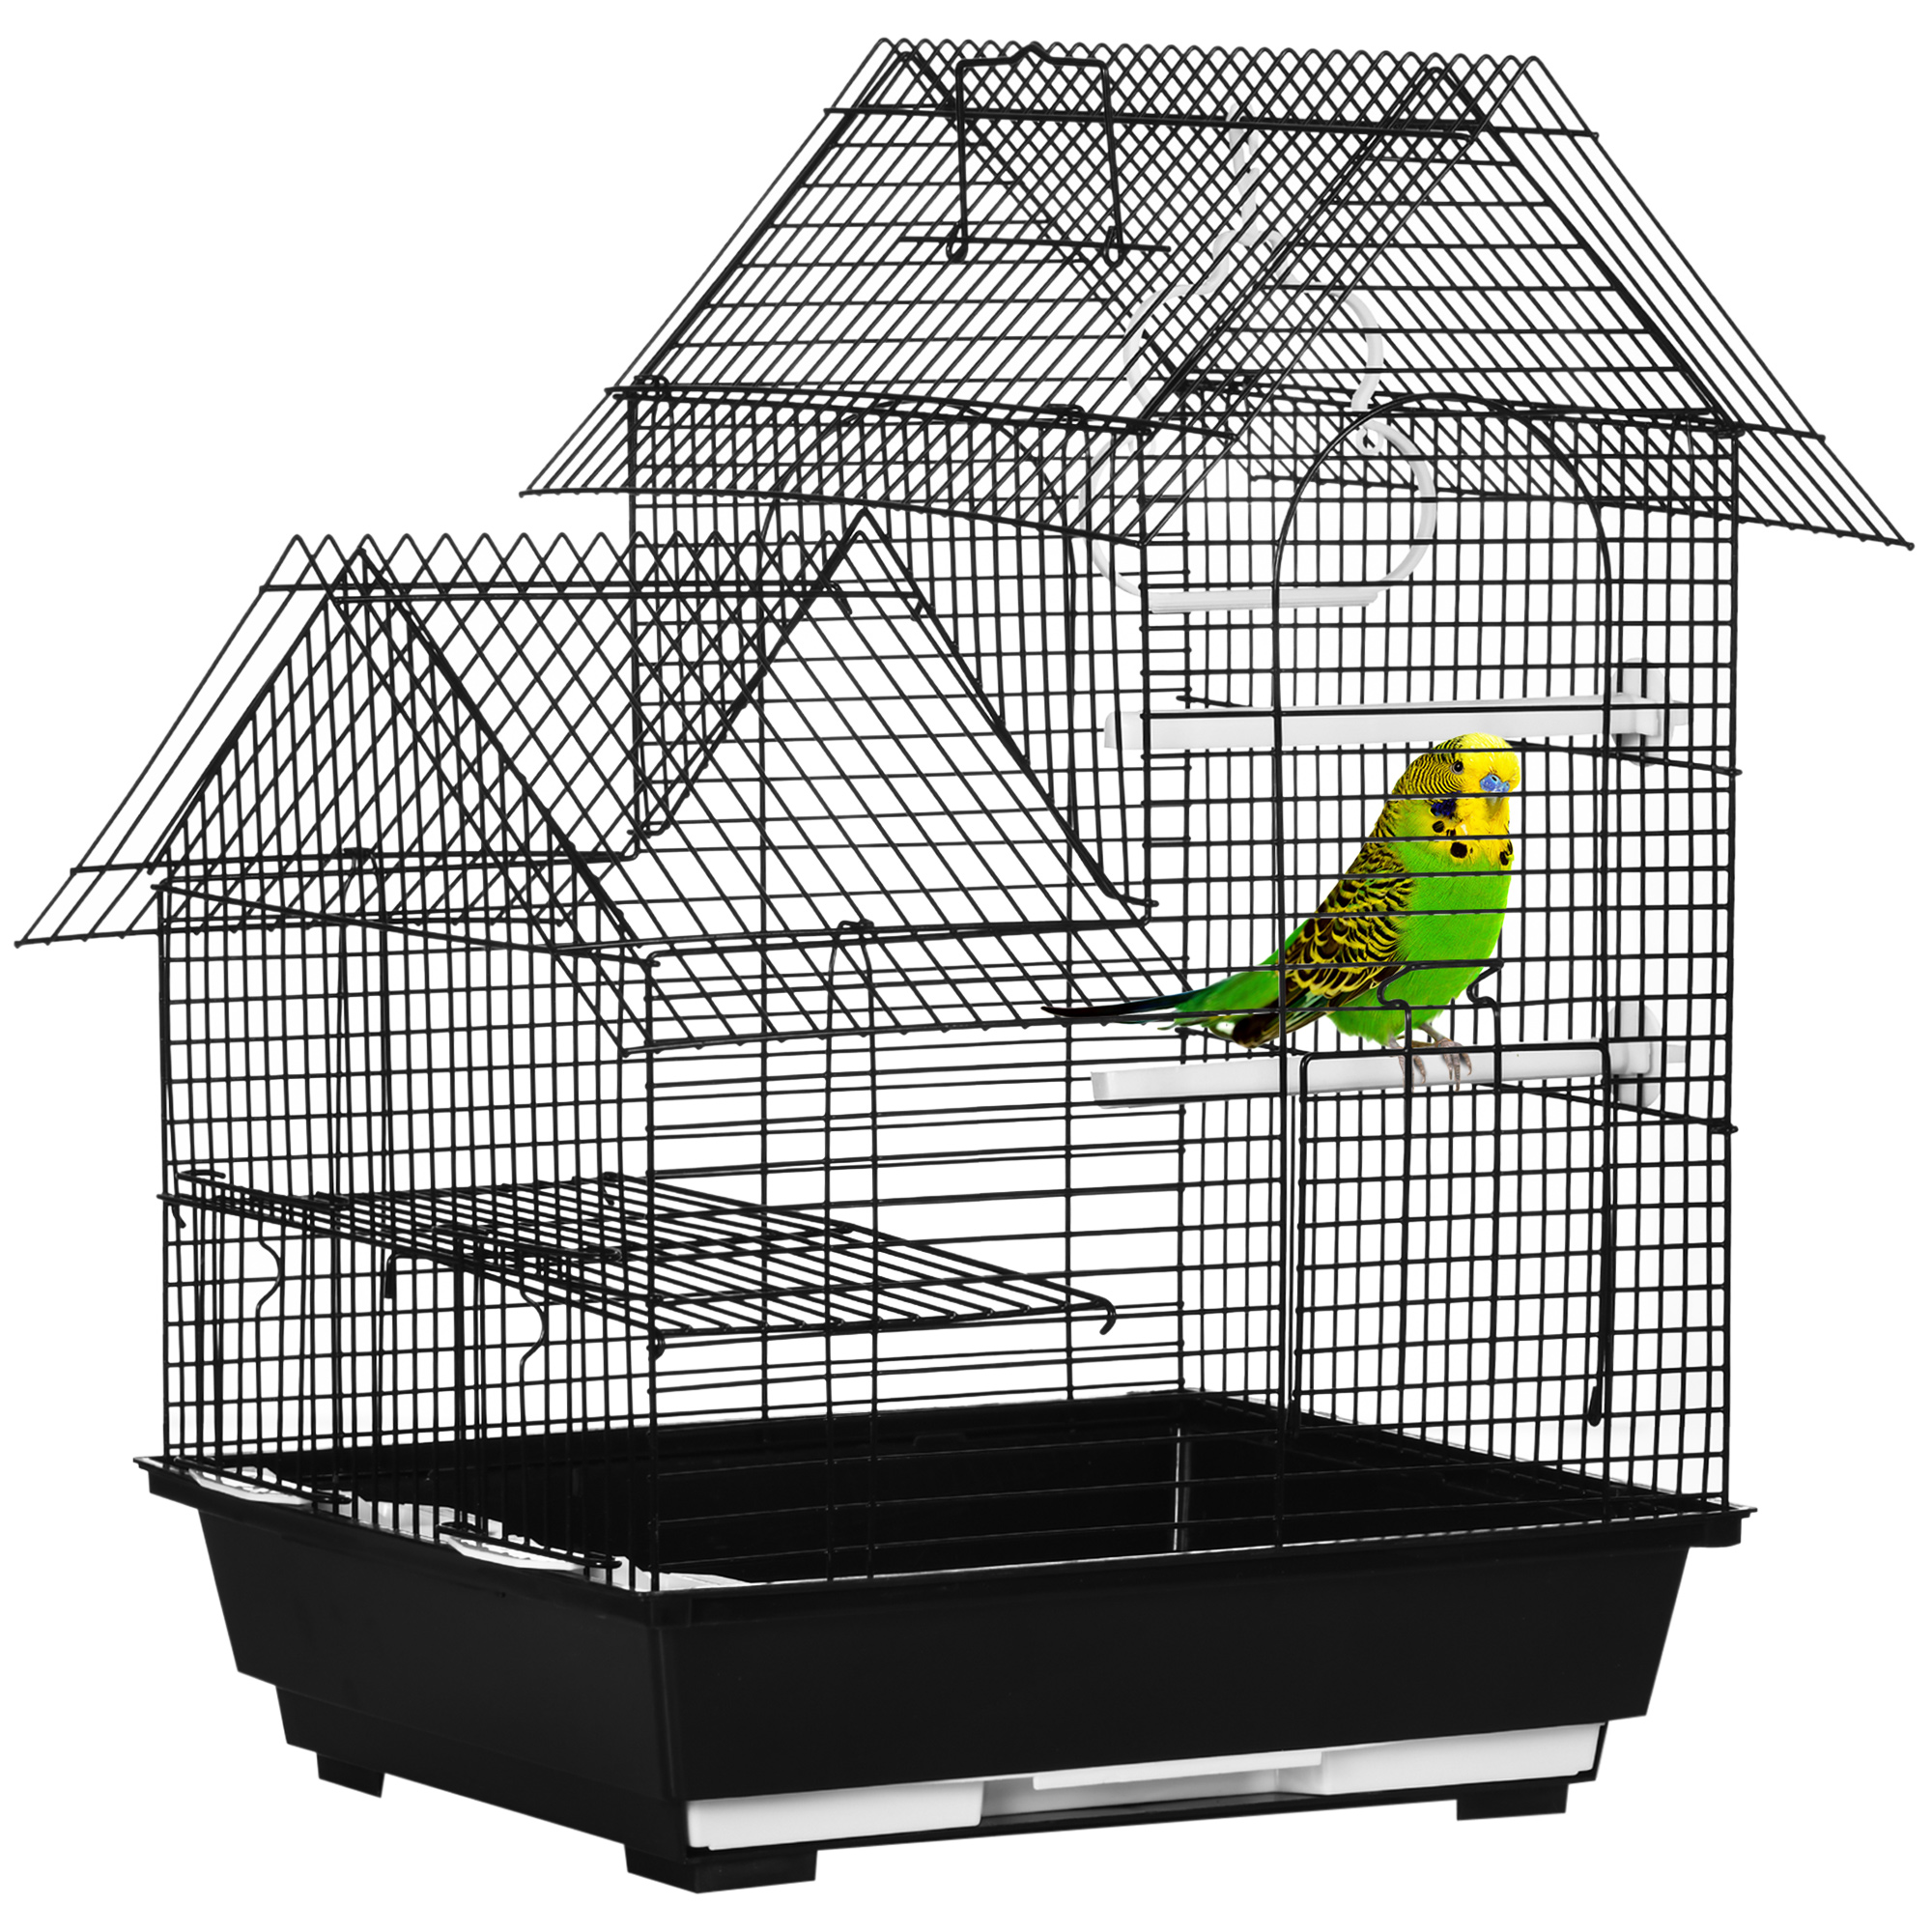 PAWHUT Cage à oiseaux sur roulettes - étagère, plateau déjection, 3  perchoirs, 4 mangeoirs, 2 portes, 8 trappes, accessoires - acier noir pas  cher 